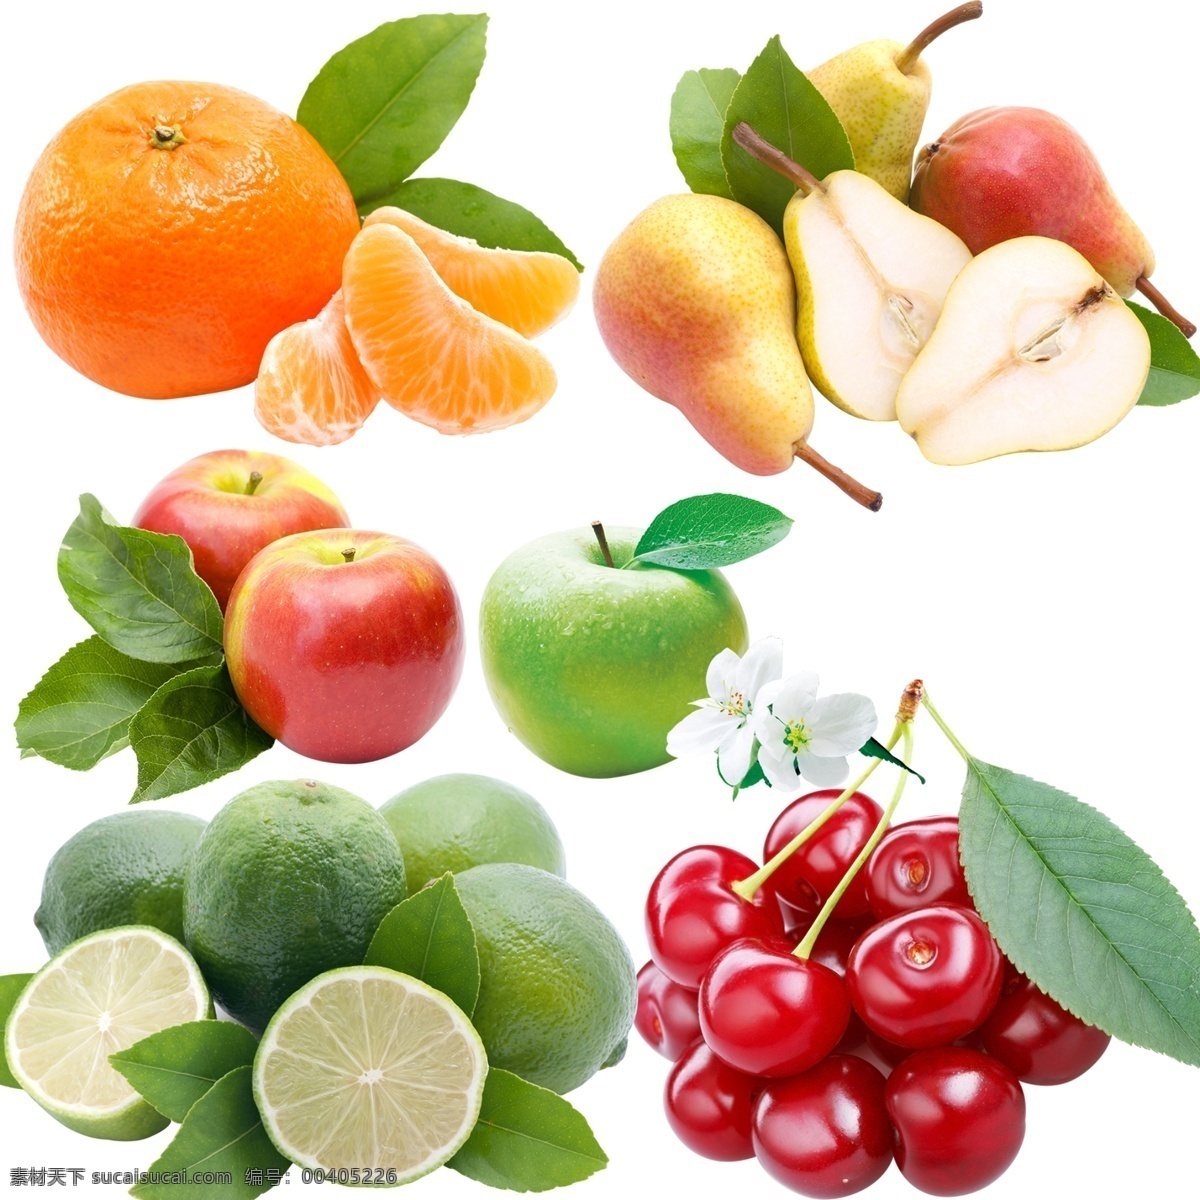 水果组合 水果 高清 写真 樱桃 梨 苹果 桔子